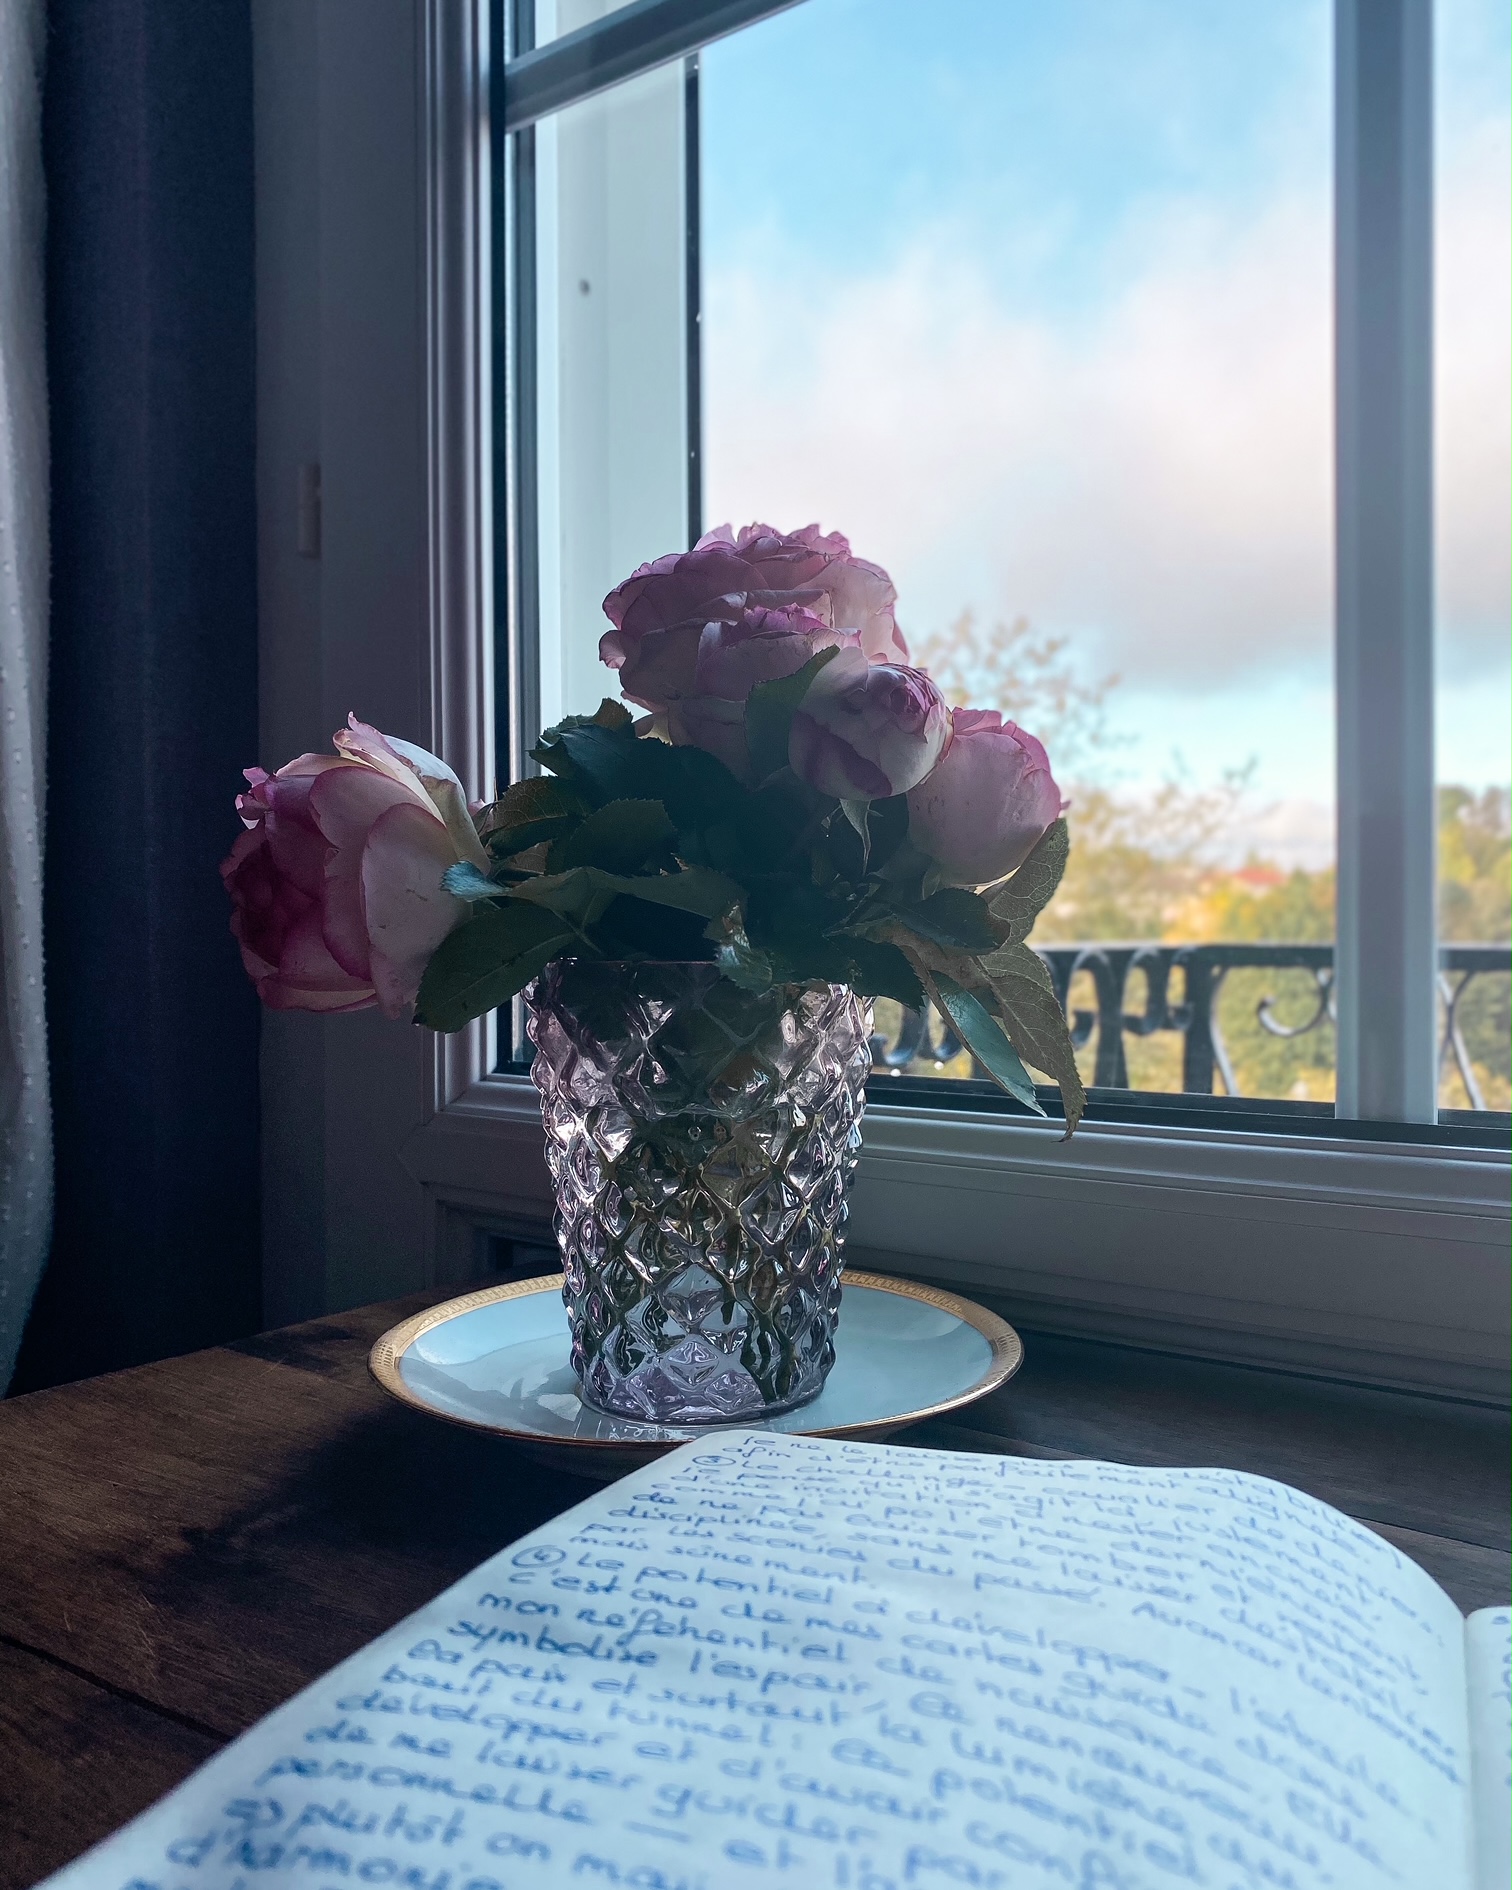 Un carnet ouvert, un bouquet de roses sur une table devant une fenêtre